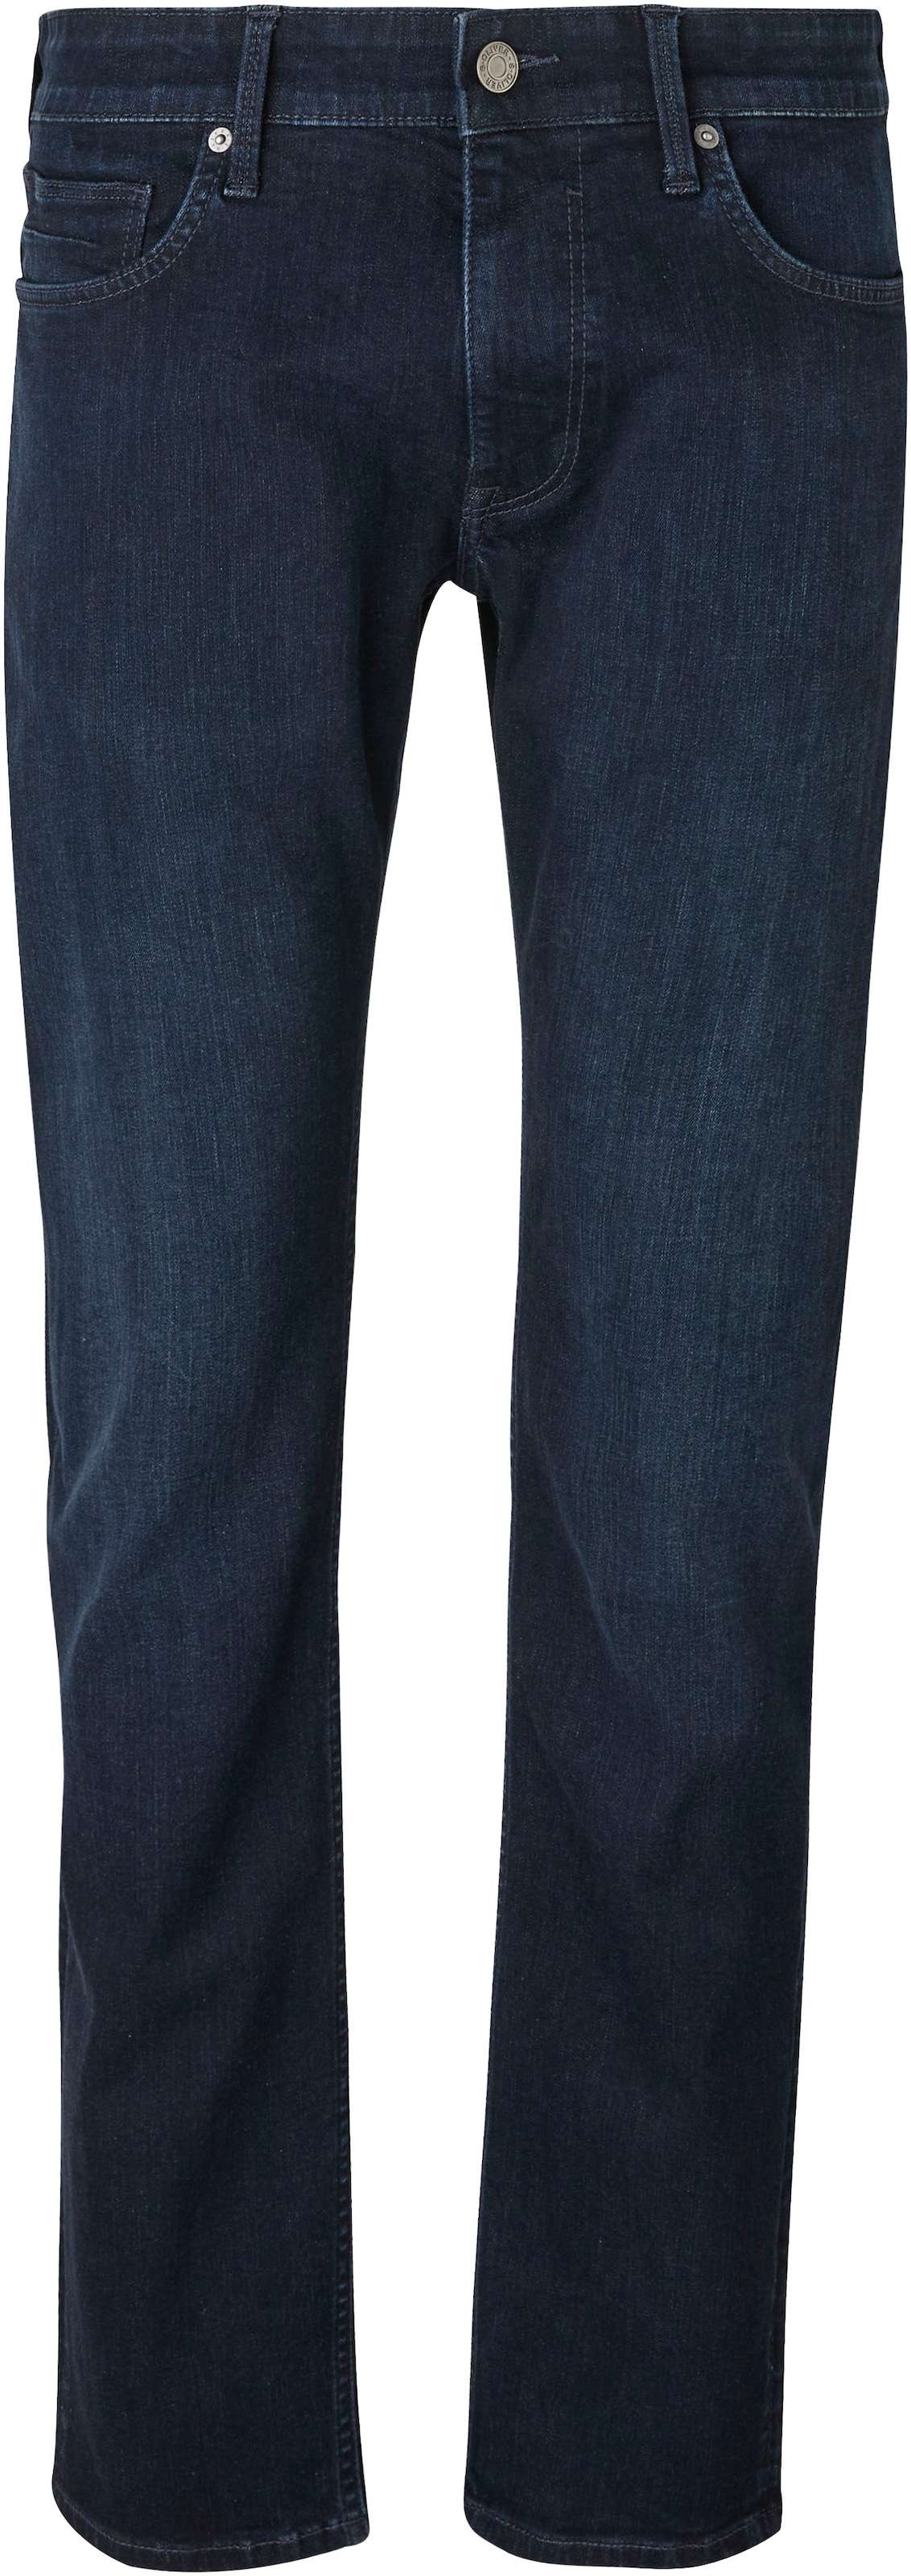 Удобные джинсы с задними и боковыми карманами.